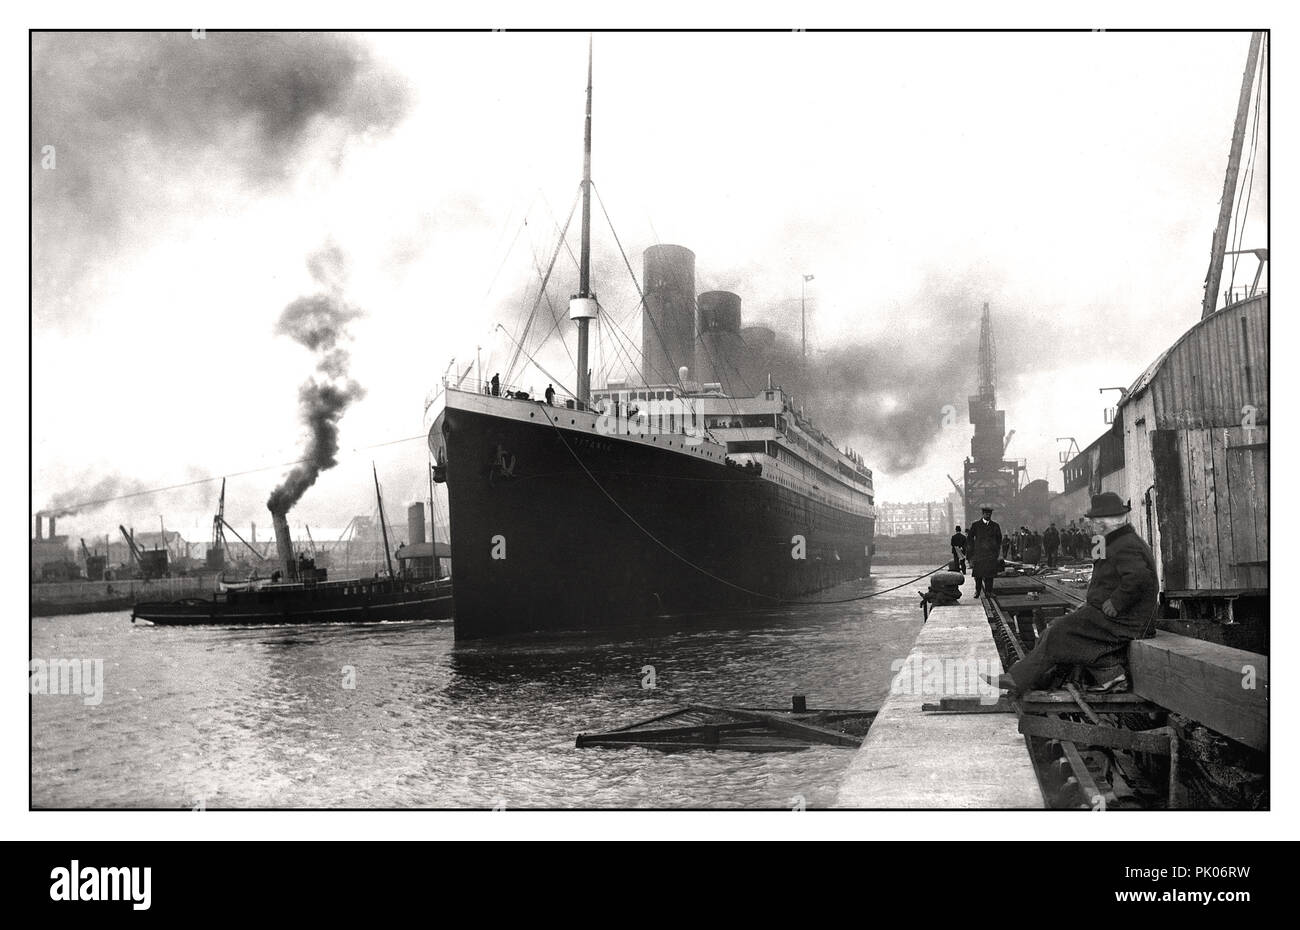 TITANIC 1912 RMS TITANIC verlässt Harland & Wolff Werften April 2. 1912 düsteres Bild der Titanic, die sich abwirft Auf ihrer schicksalhaften Jungfernfahrt Stockfoto